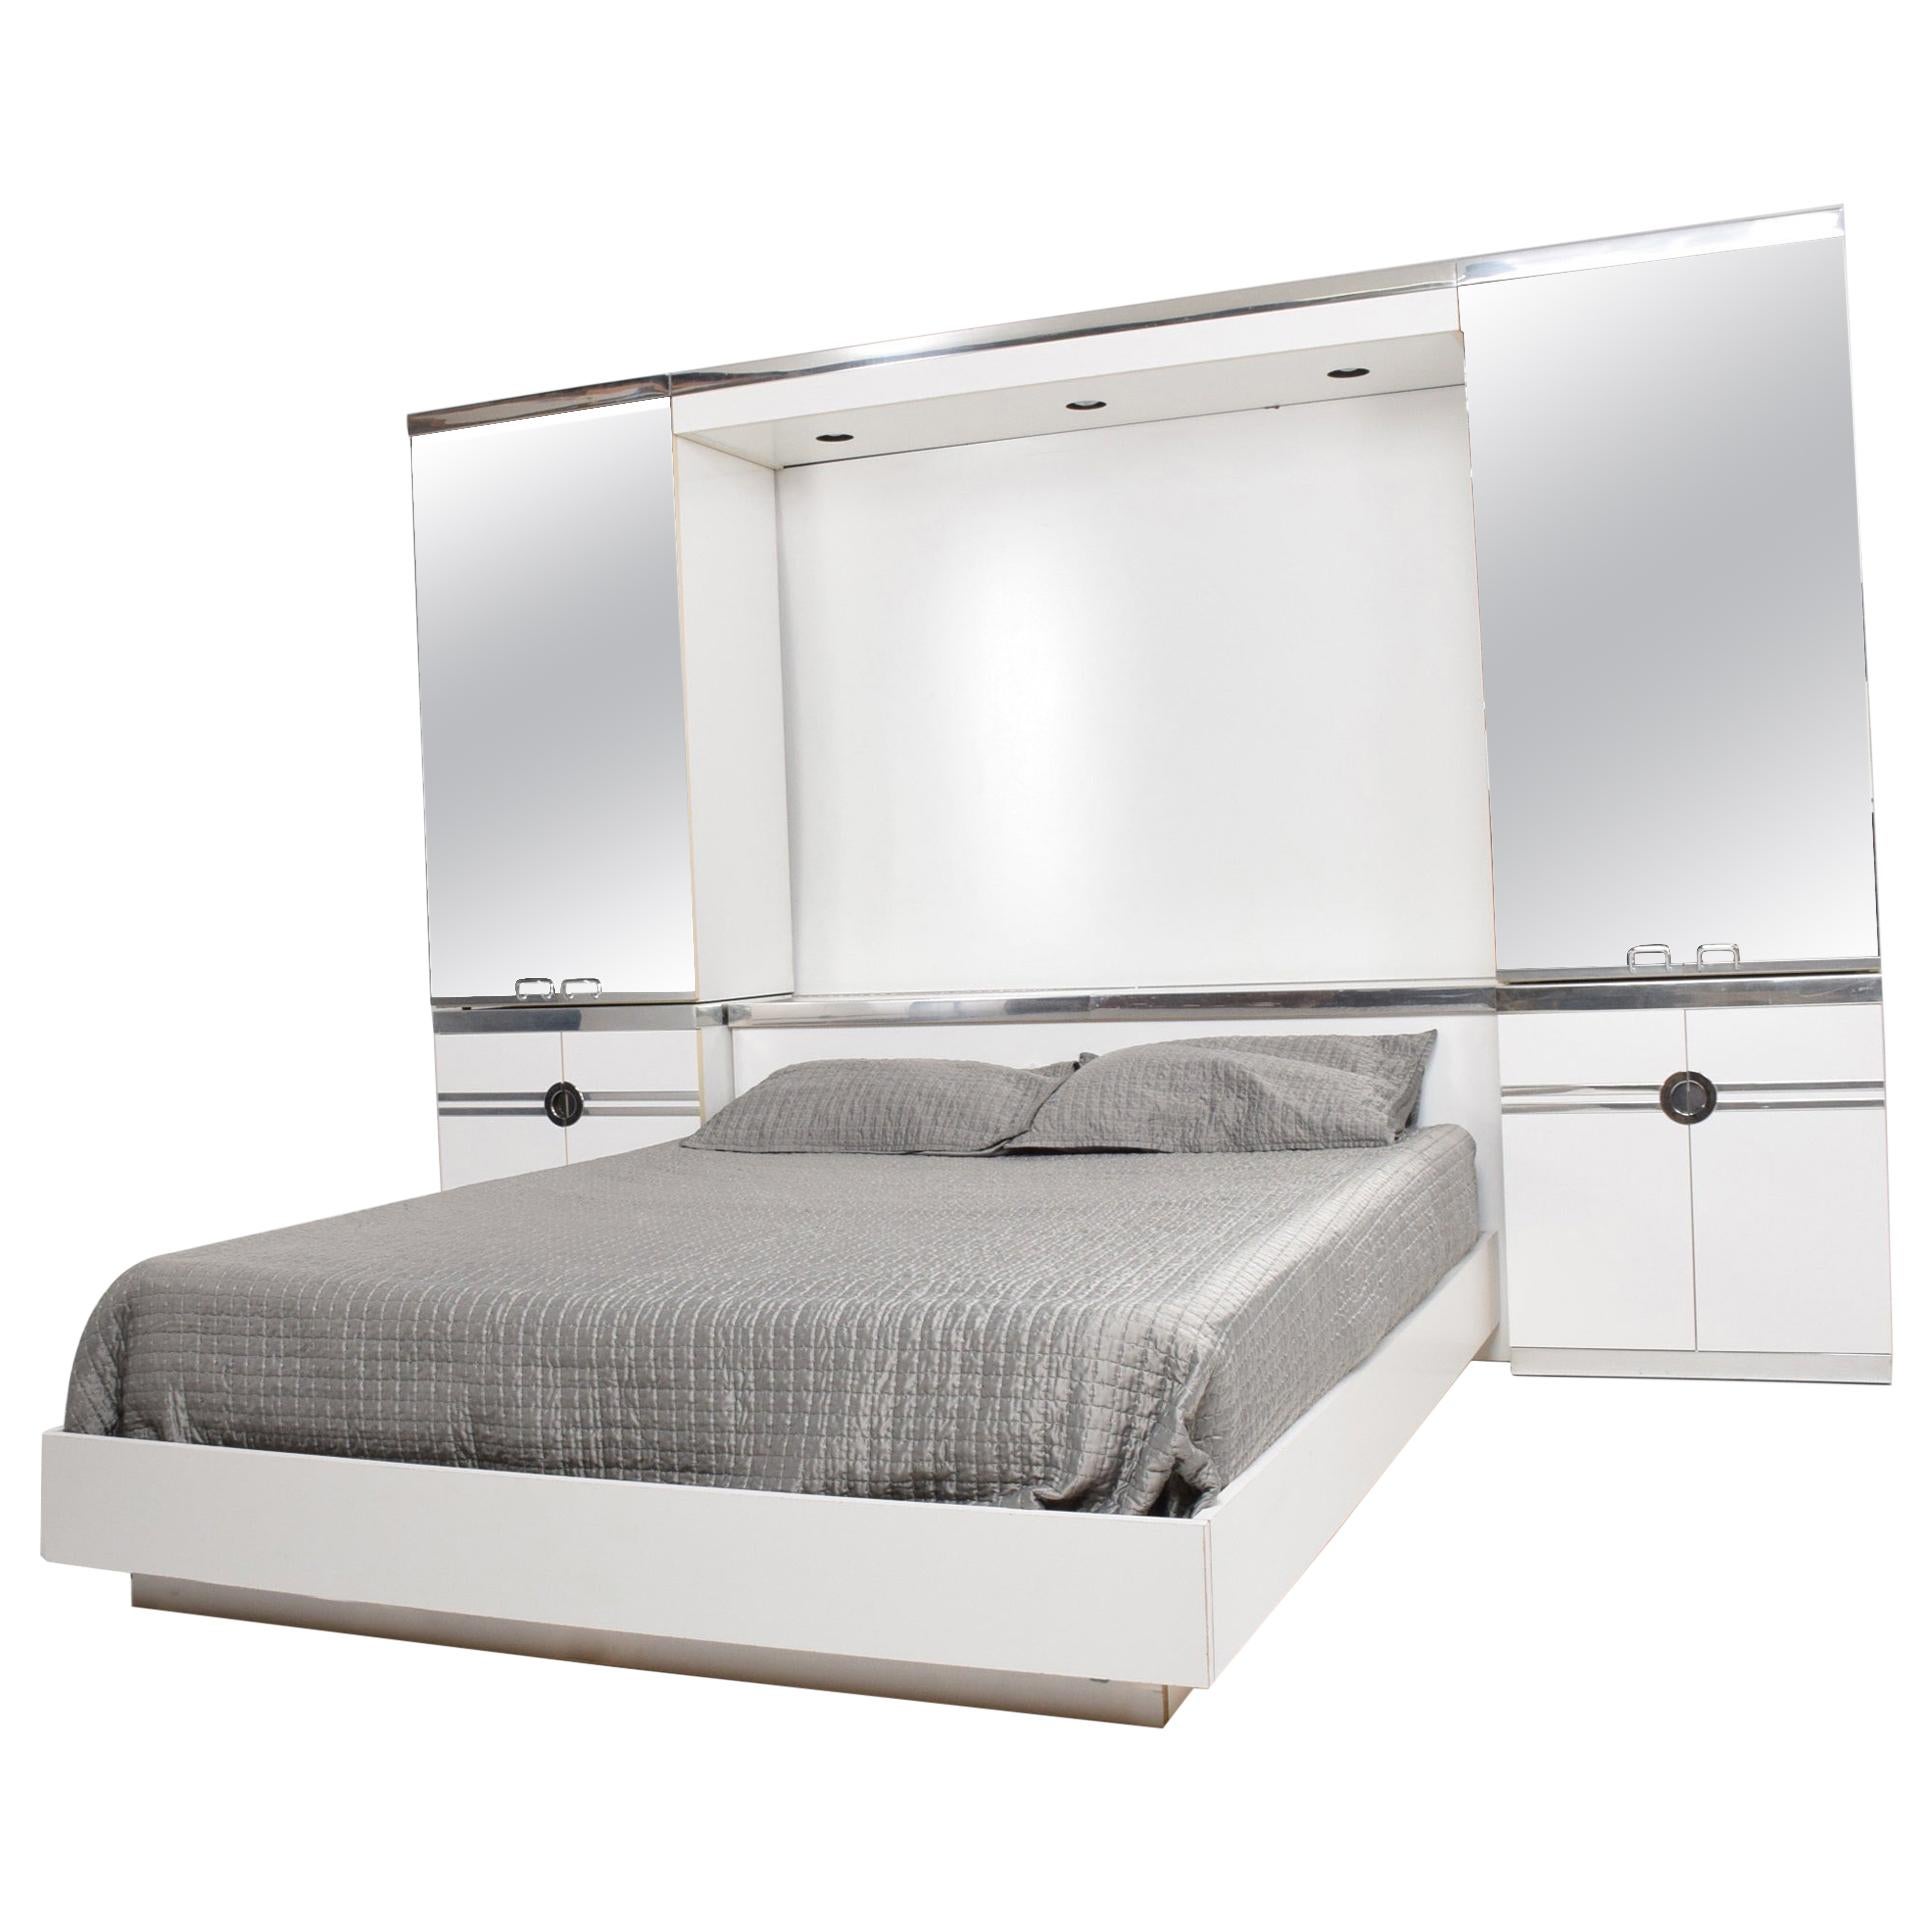 1970s French designer PIERRE CARDIN Mirrored Bedroom Set Ensemble White & Chrome